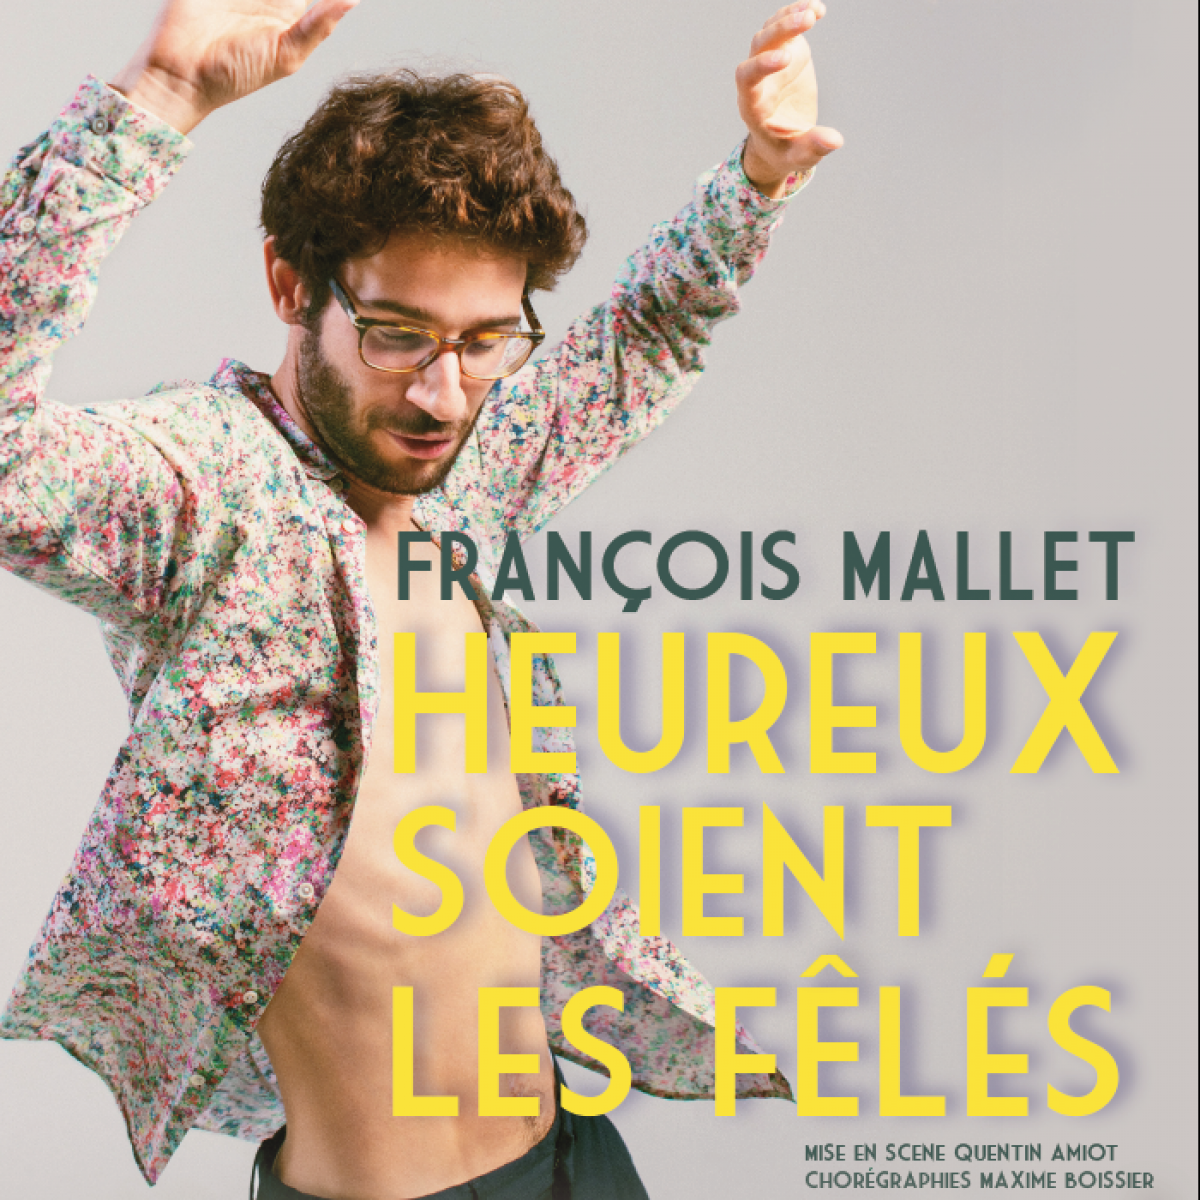 François Mallet – Heureux soient les fêlés